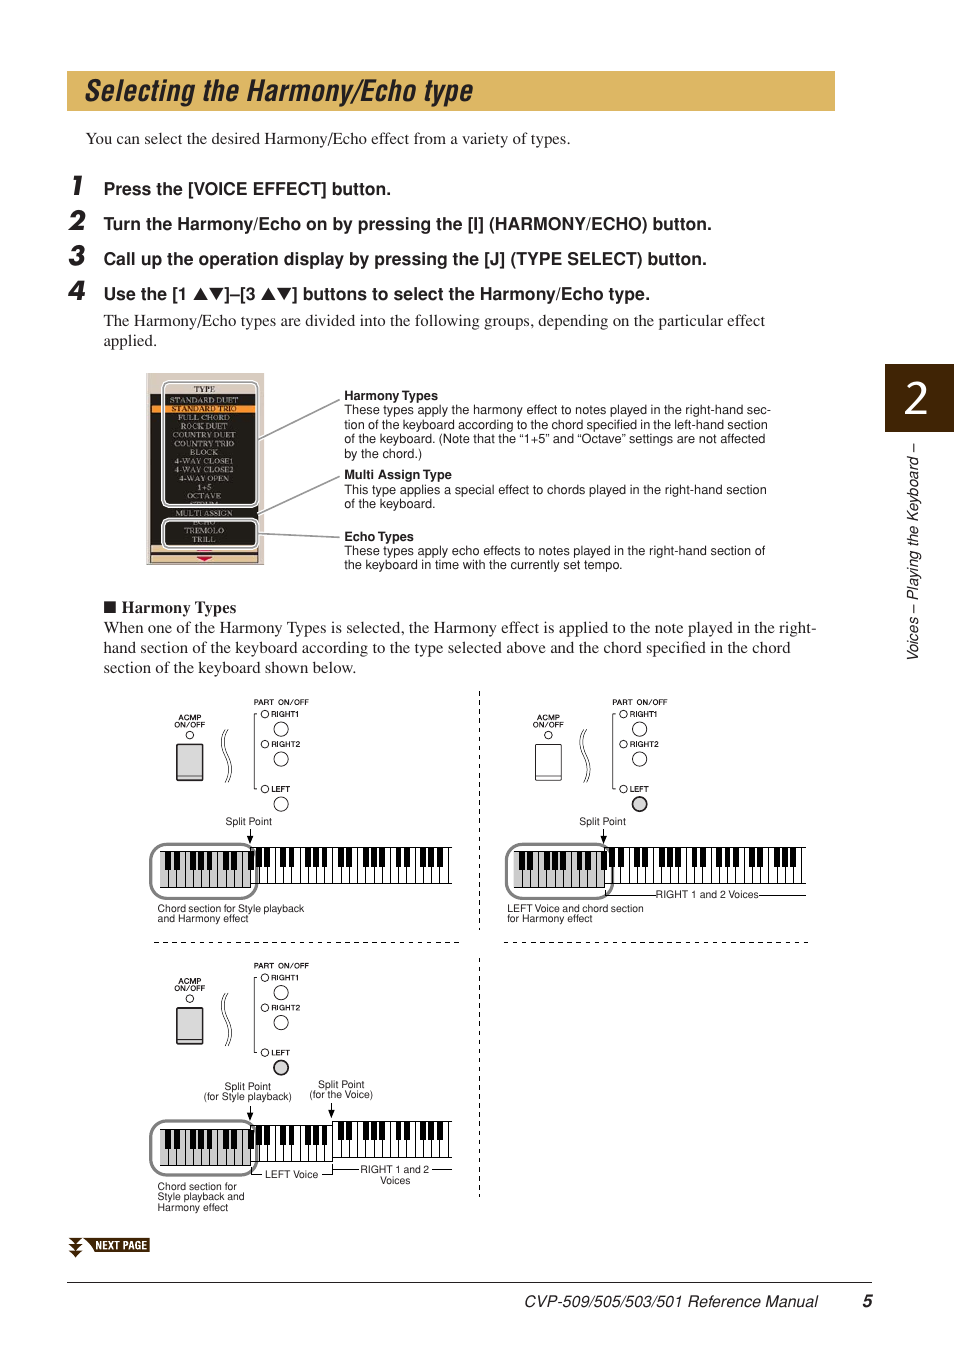 Selecting the harmony/echo type | Yamaha CLAVINOVA CVP-509 User Manual